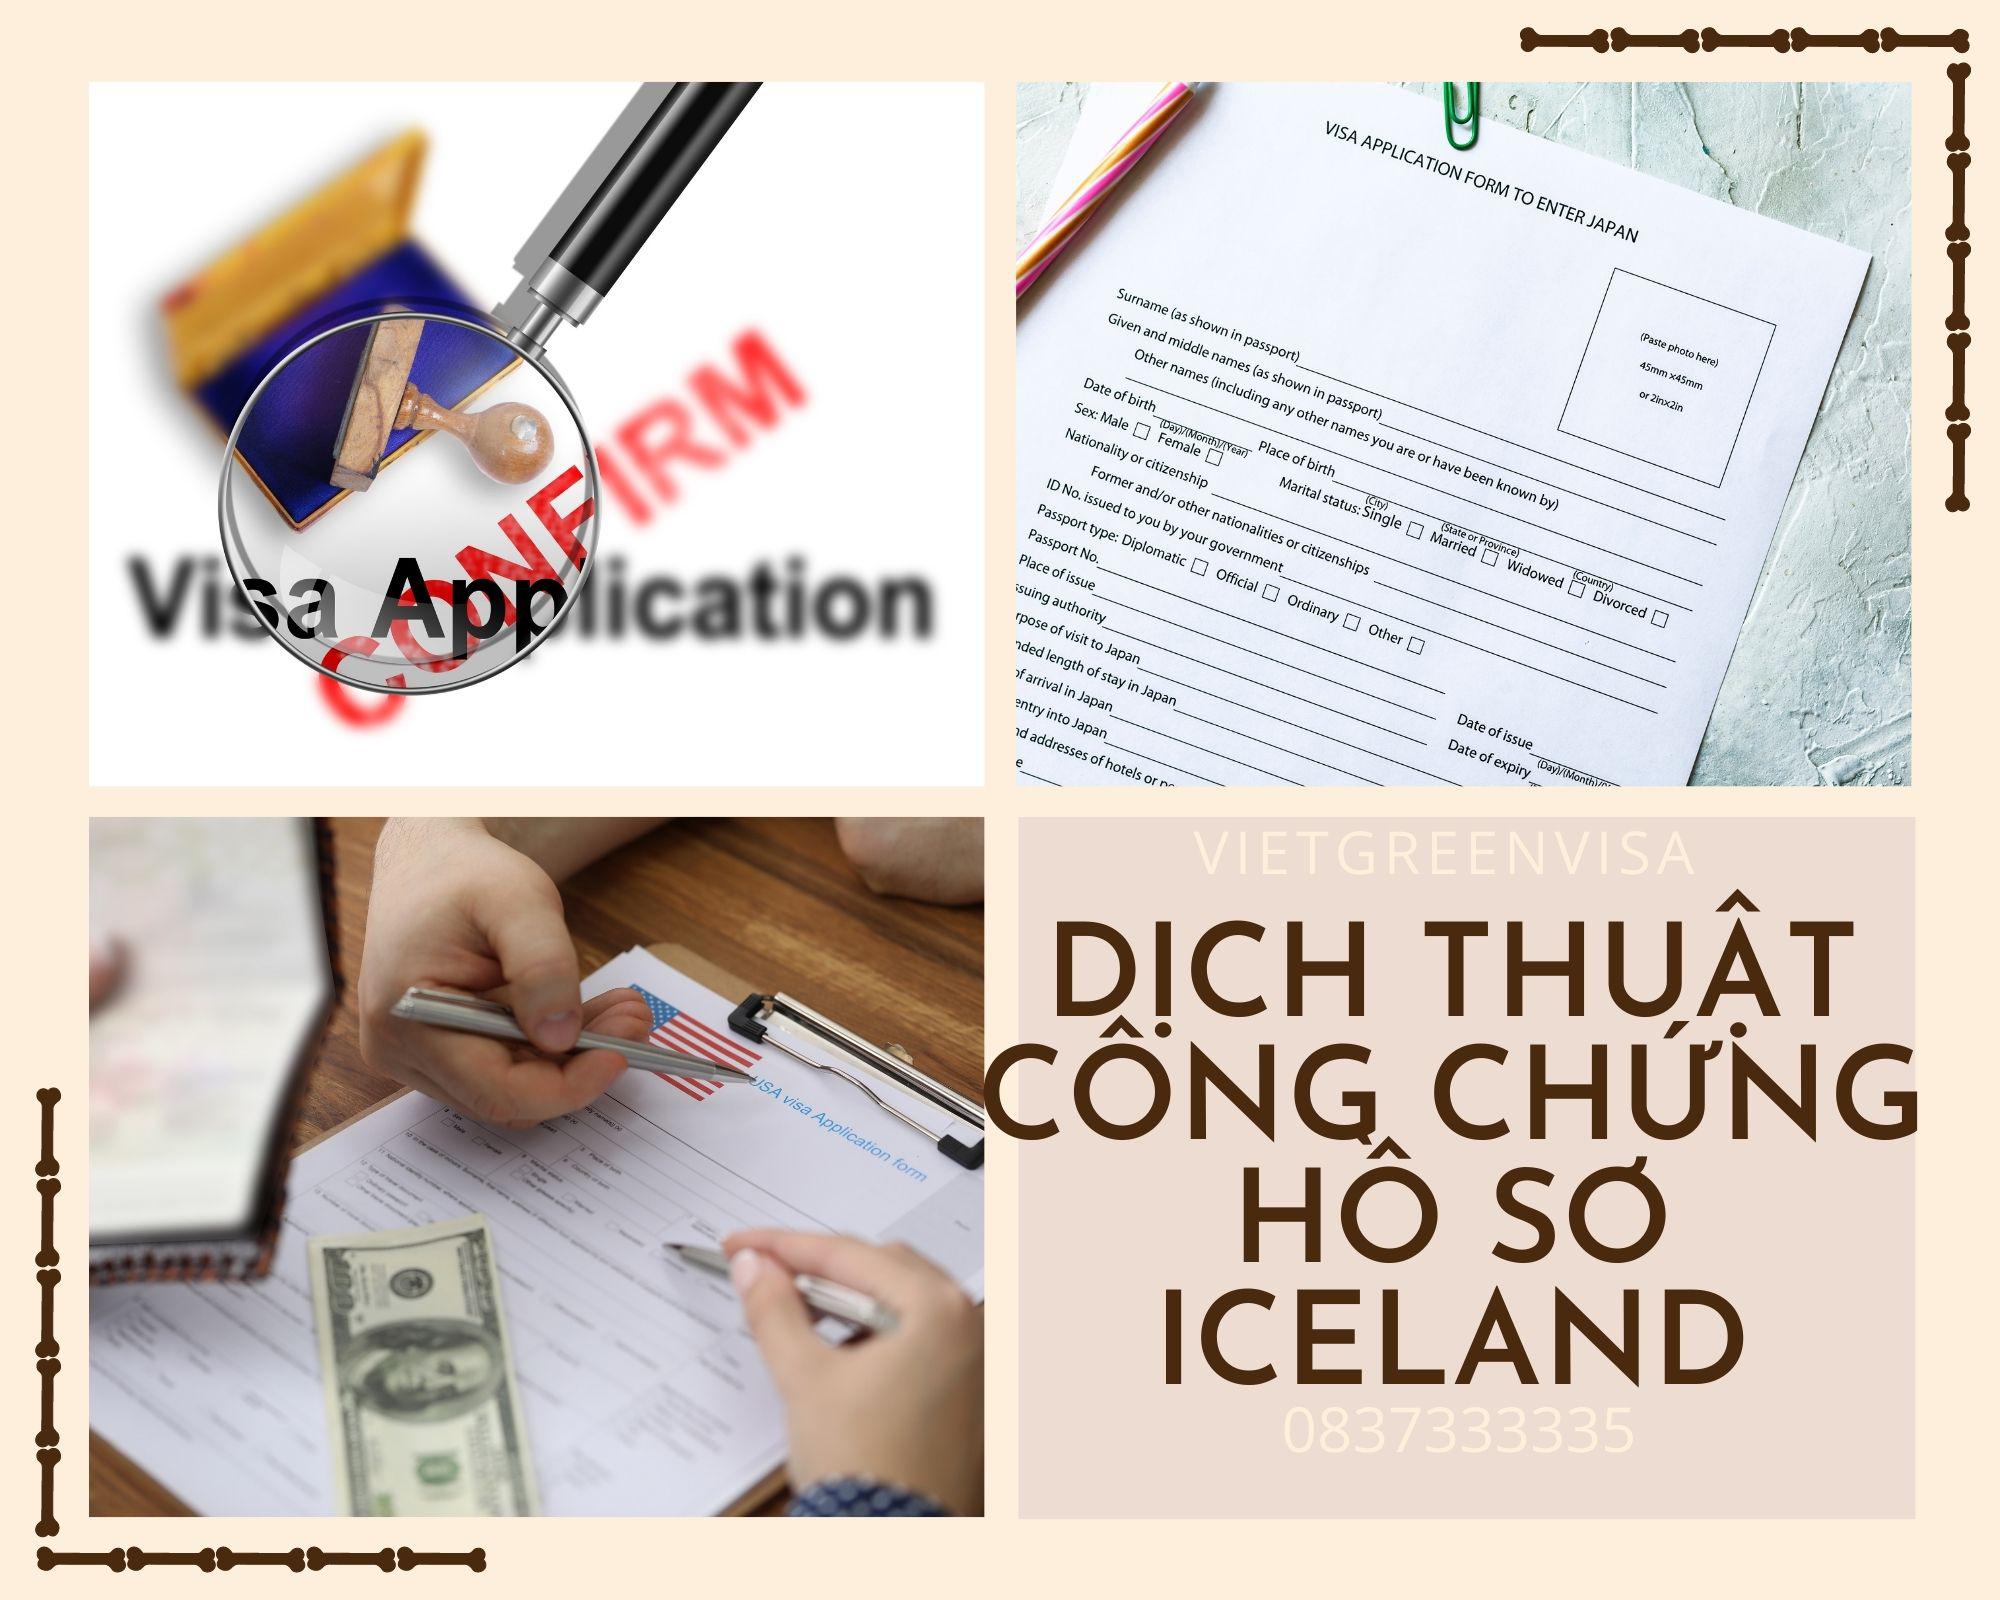 Tư vấn dịch thuật công chứng hồ sơ visa Iceland nhanh gọn